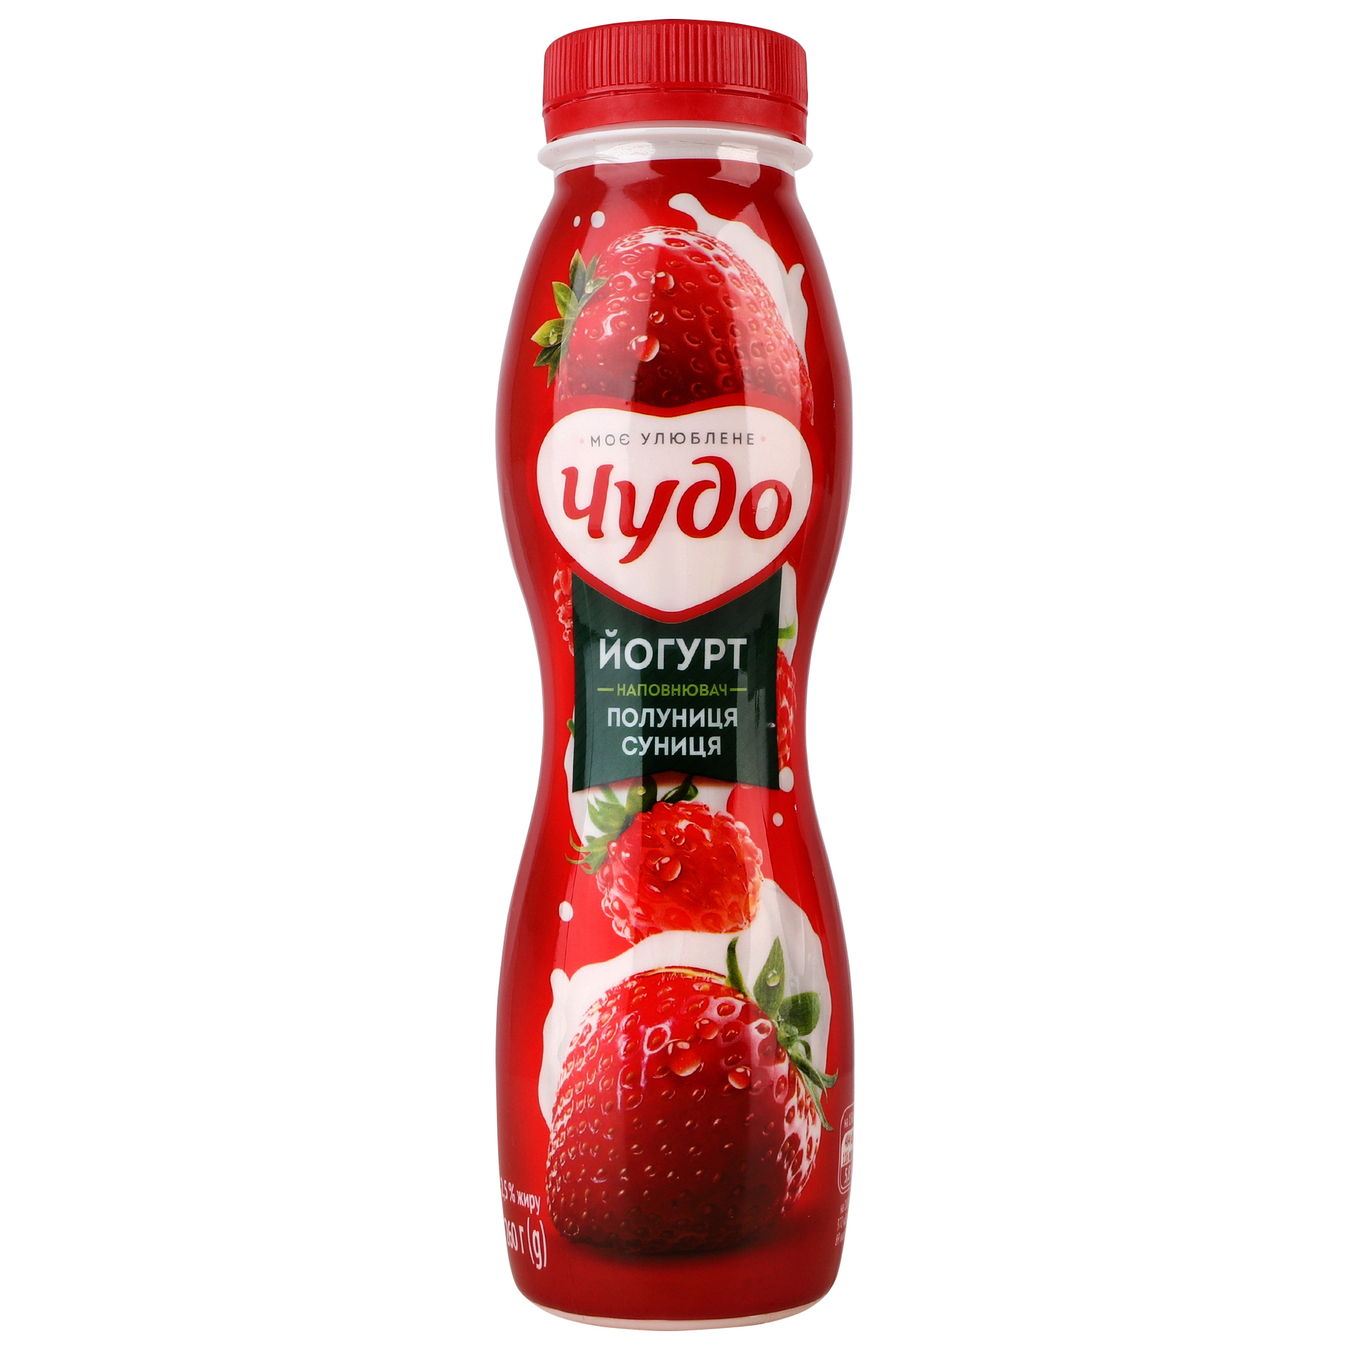 Yogurt Chudo Strawberry-Strawberry 2.5% 260g bottle